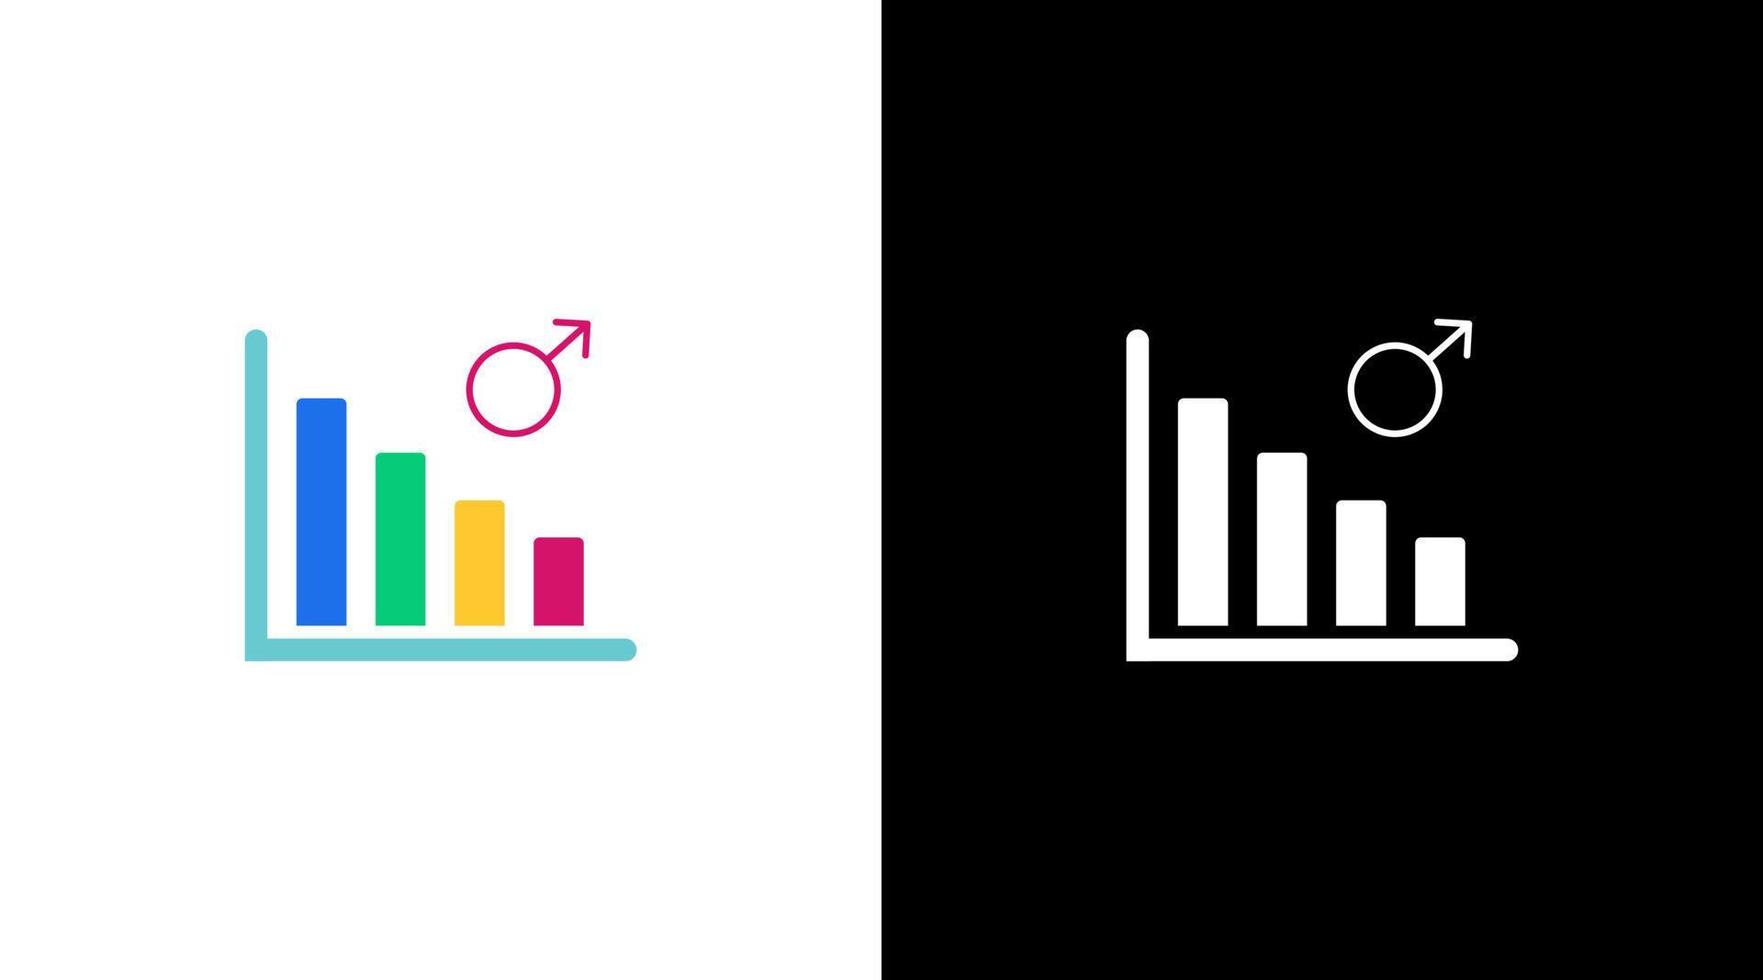 männlich Geschlecht verringern Infografik Daten Analyse bunt Symbol Design Diagramm Bar vektor